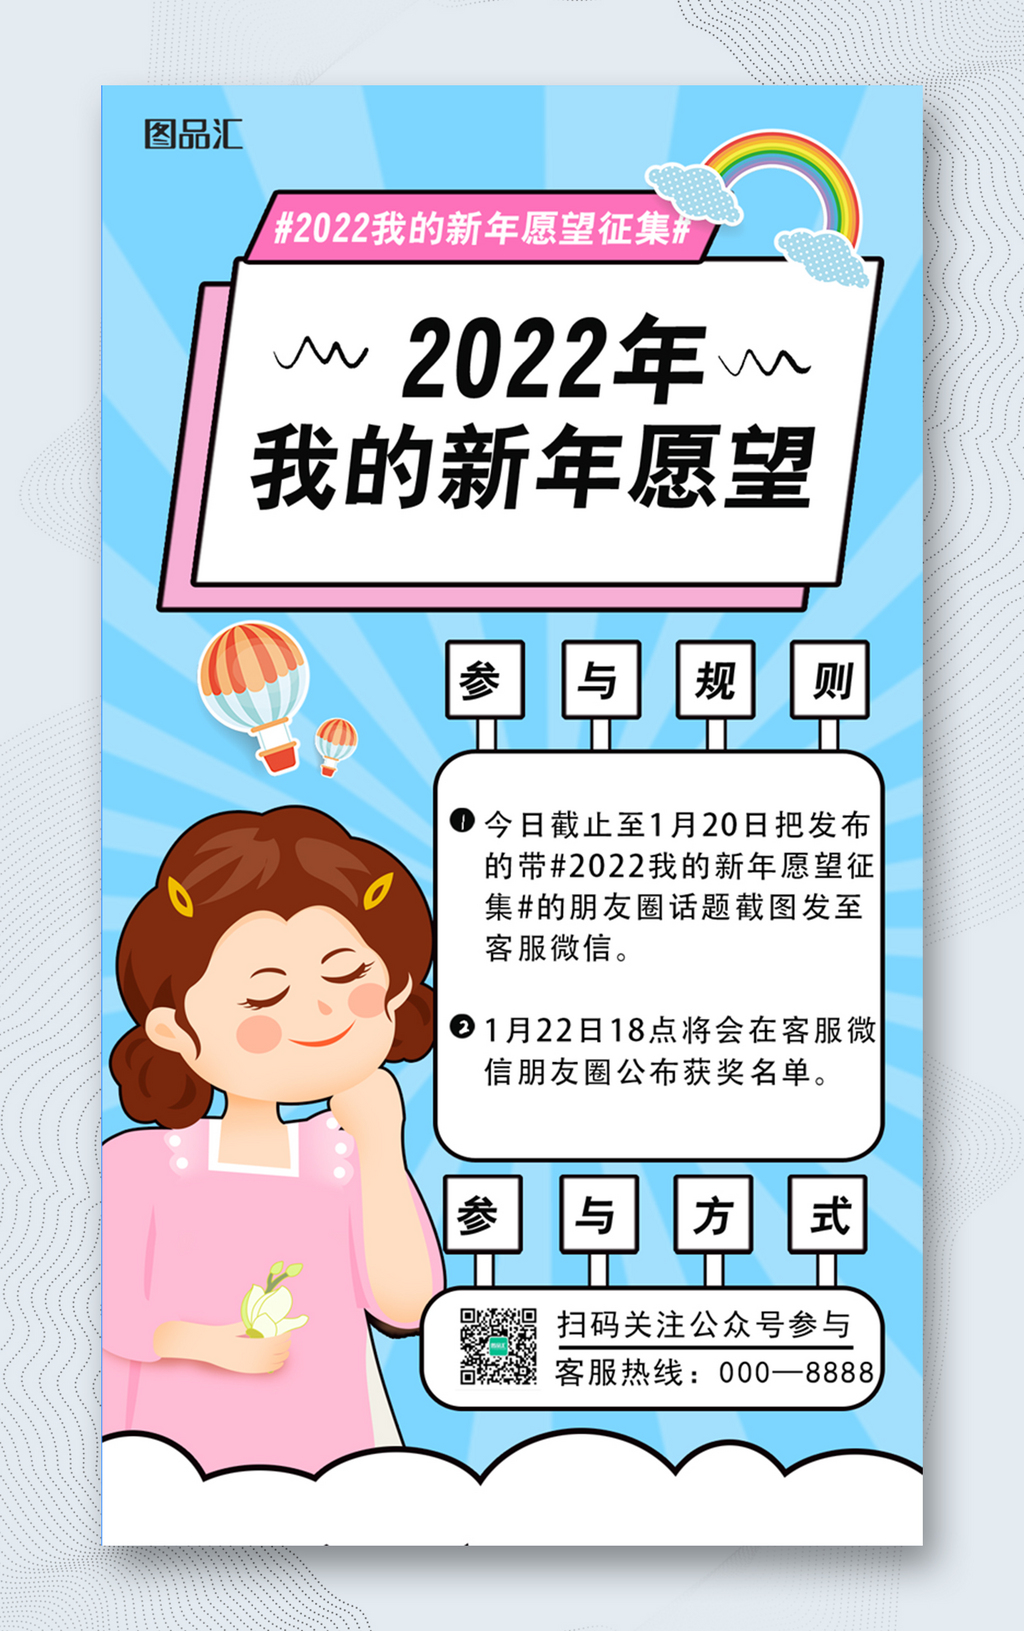 2022新年愿望活动海报